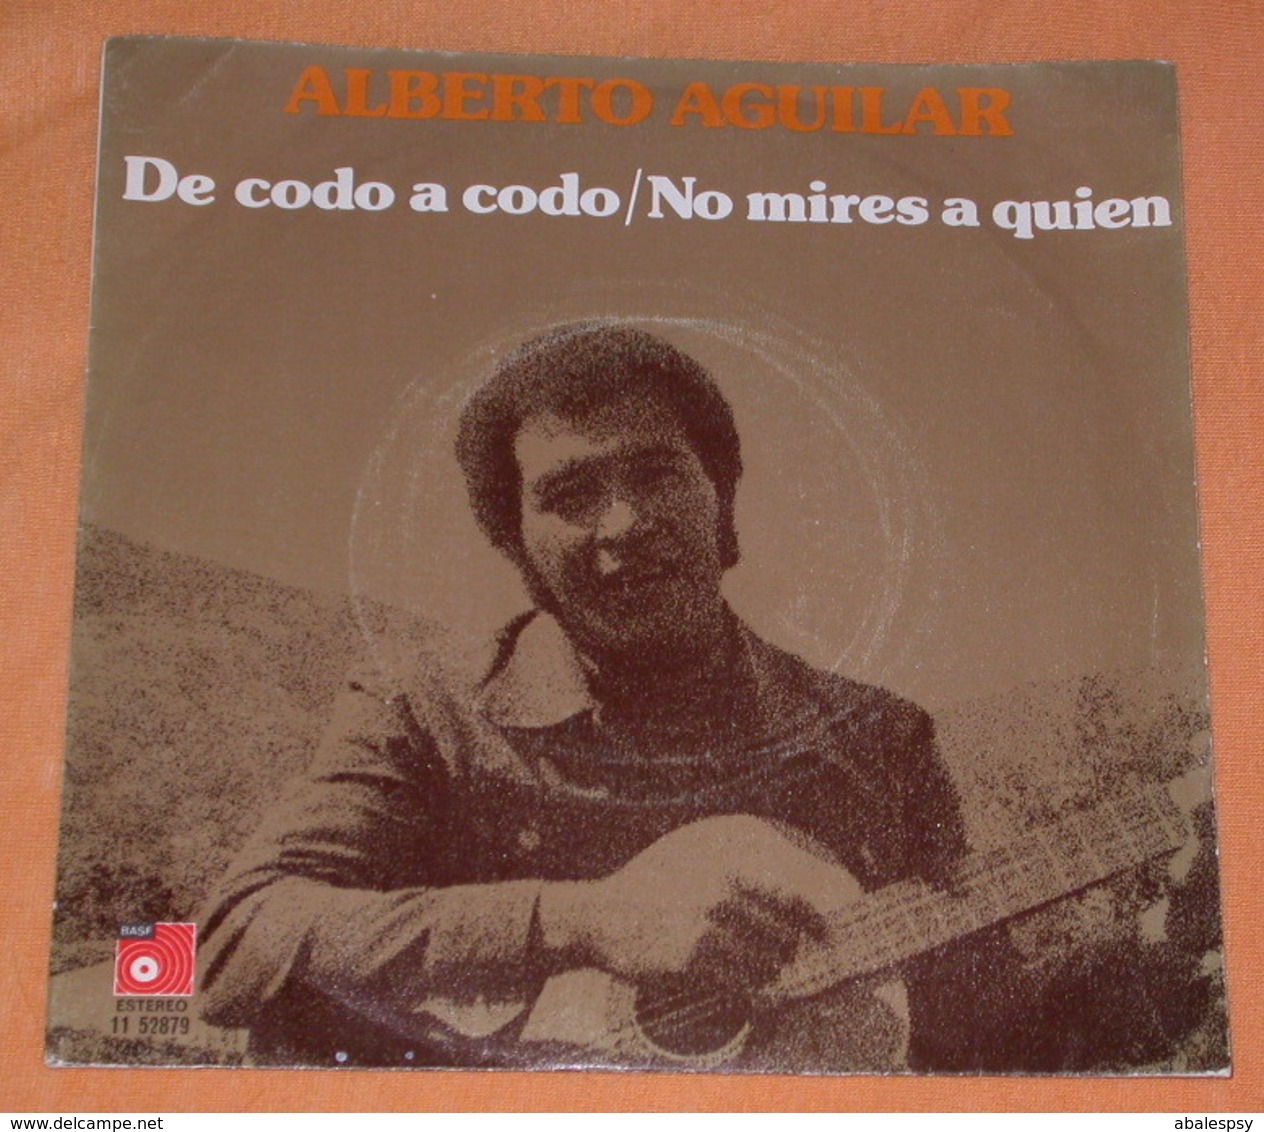 Alberto Aguilar 45t De Codo A Codo / No Mires A Quien (BAS 1975 Spain) Dedicace VG+ M - Sonstige - Spanische Musik